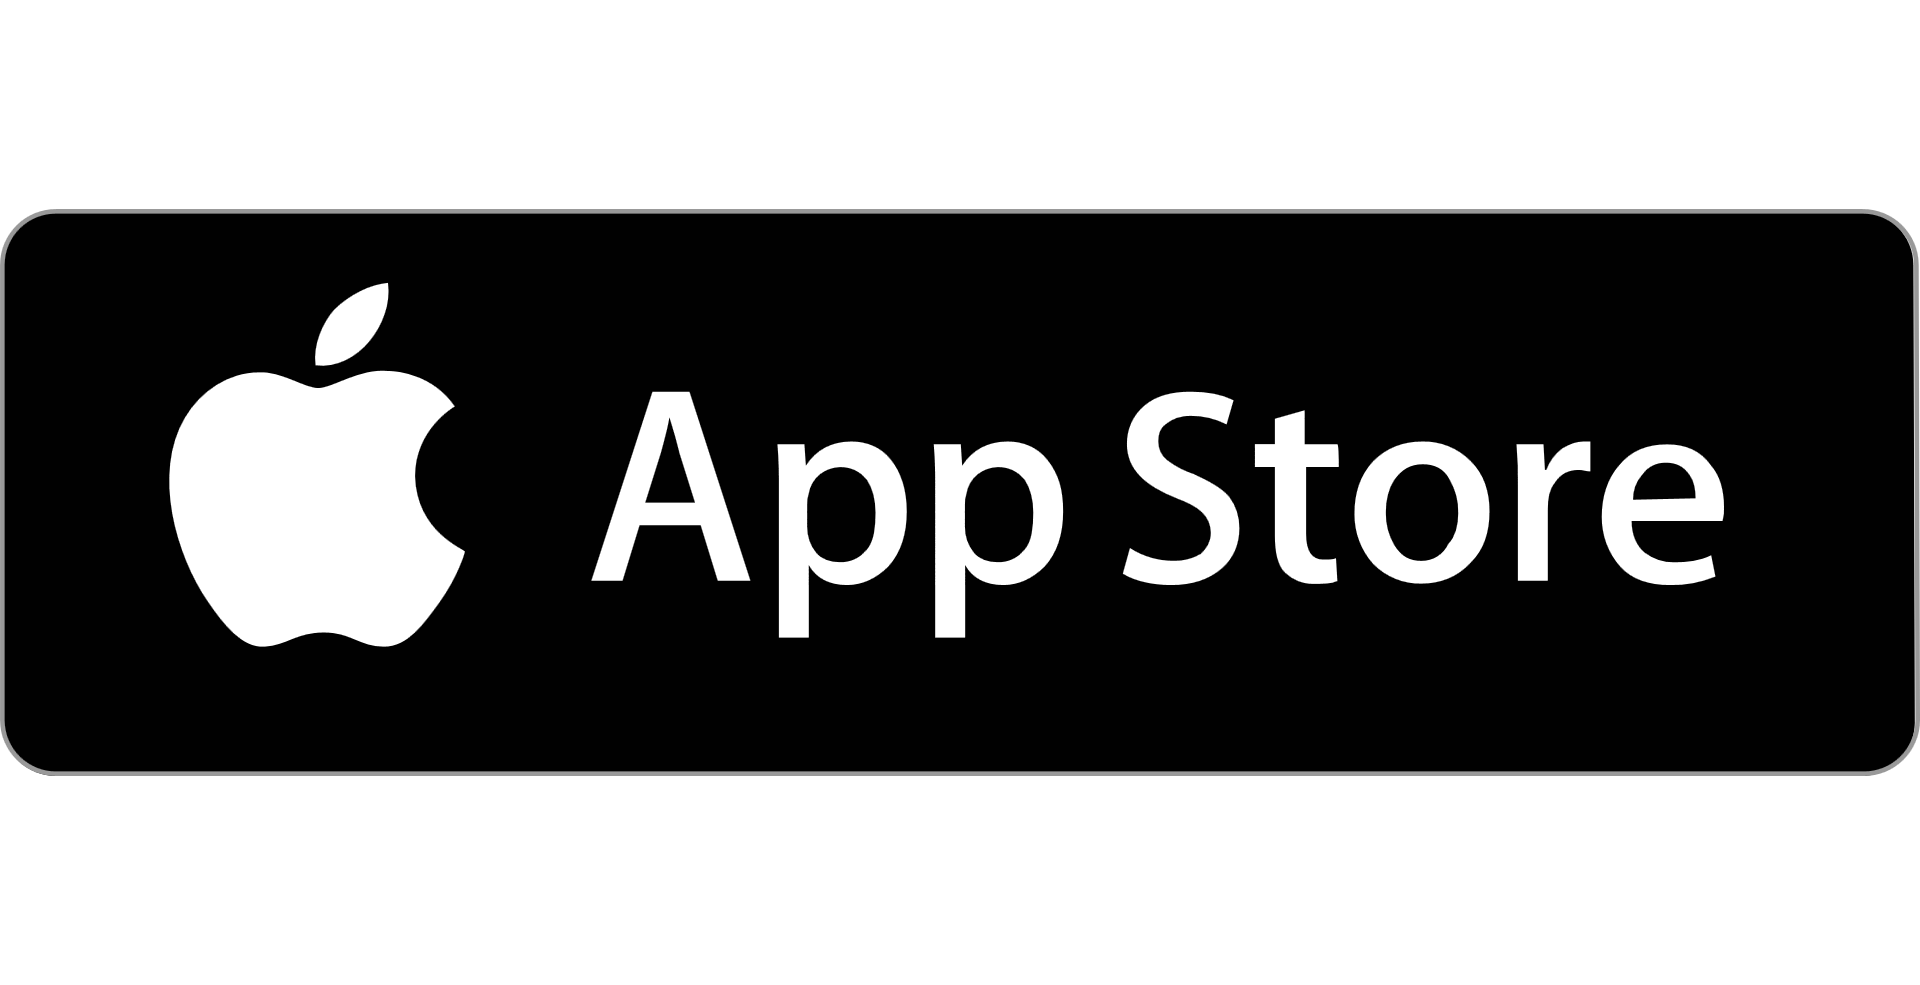 Dwoanload AppStore